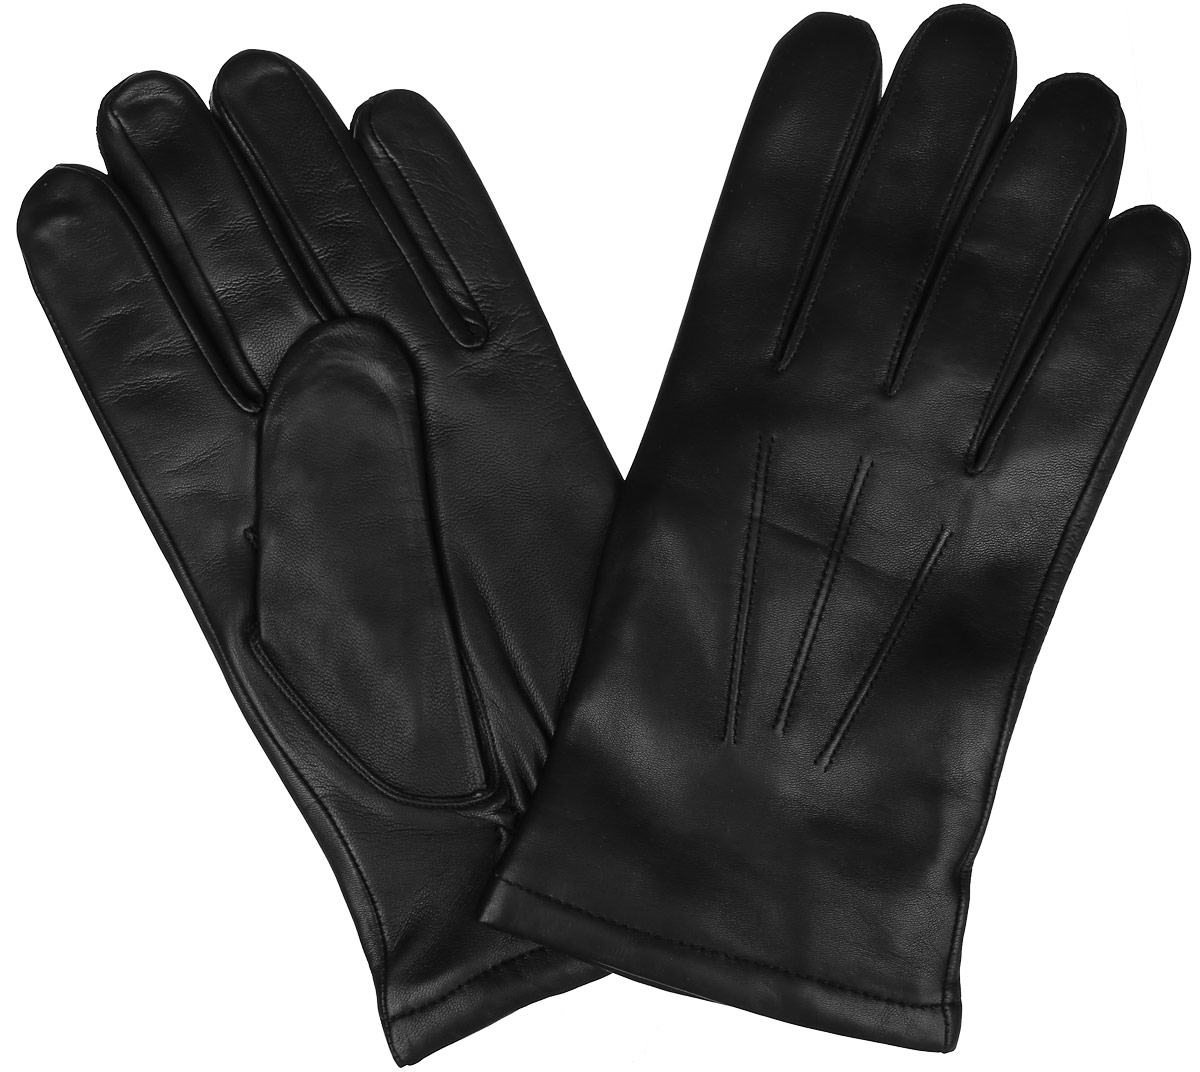 Купить кож перчатки мужские. Перчатки офицерские кожаные зимние уставные 1604004. Is133 перчатки. Мужские перчатки. Кожаные перчатки мужские.